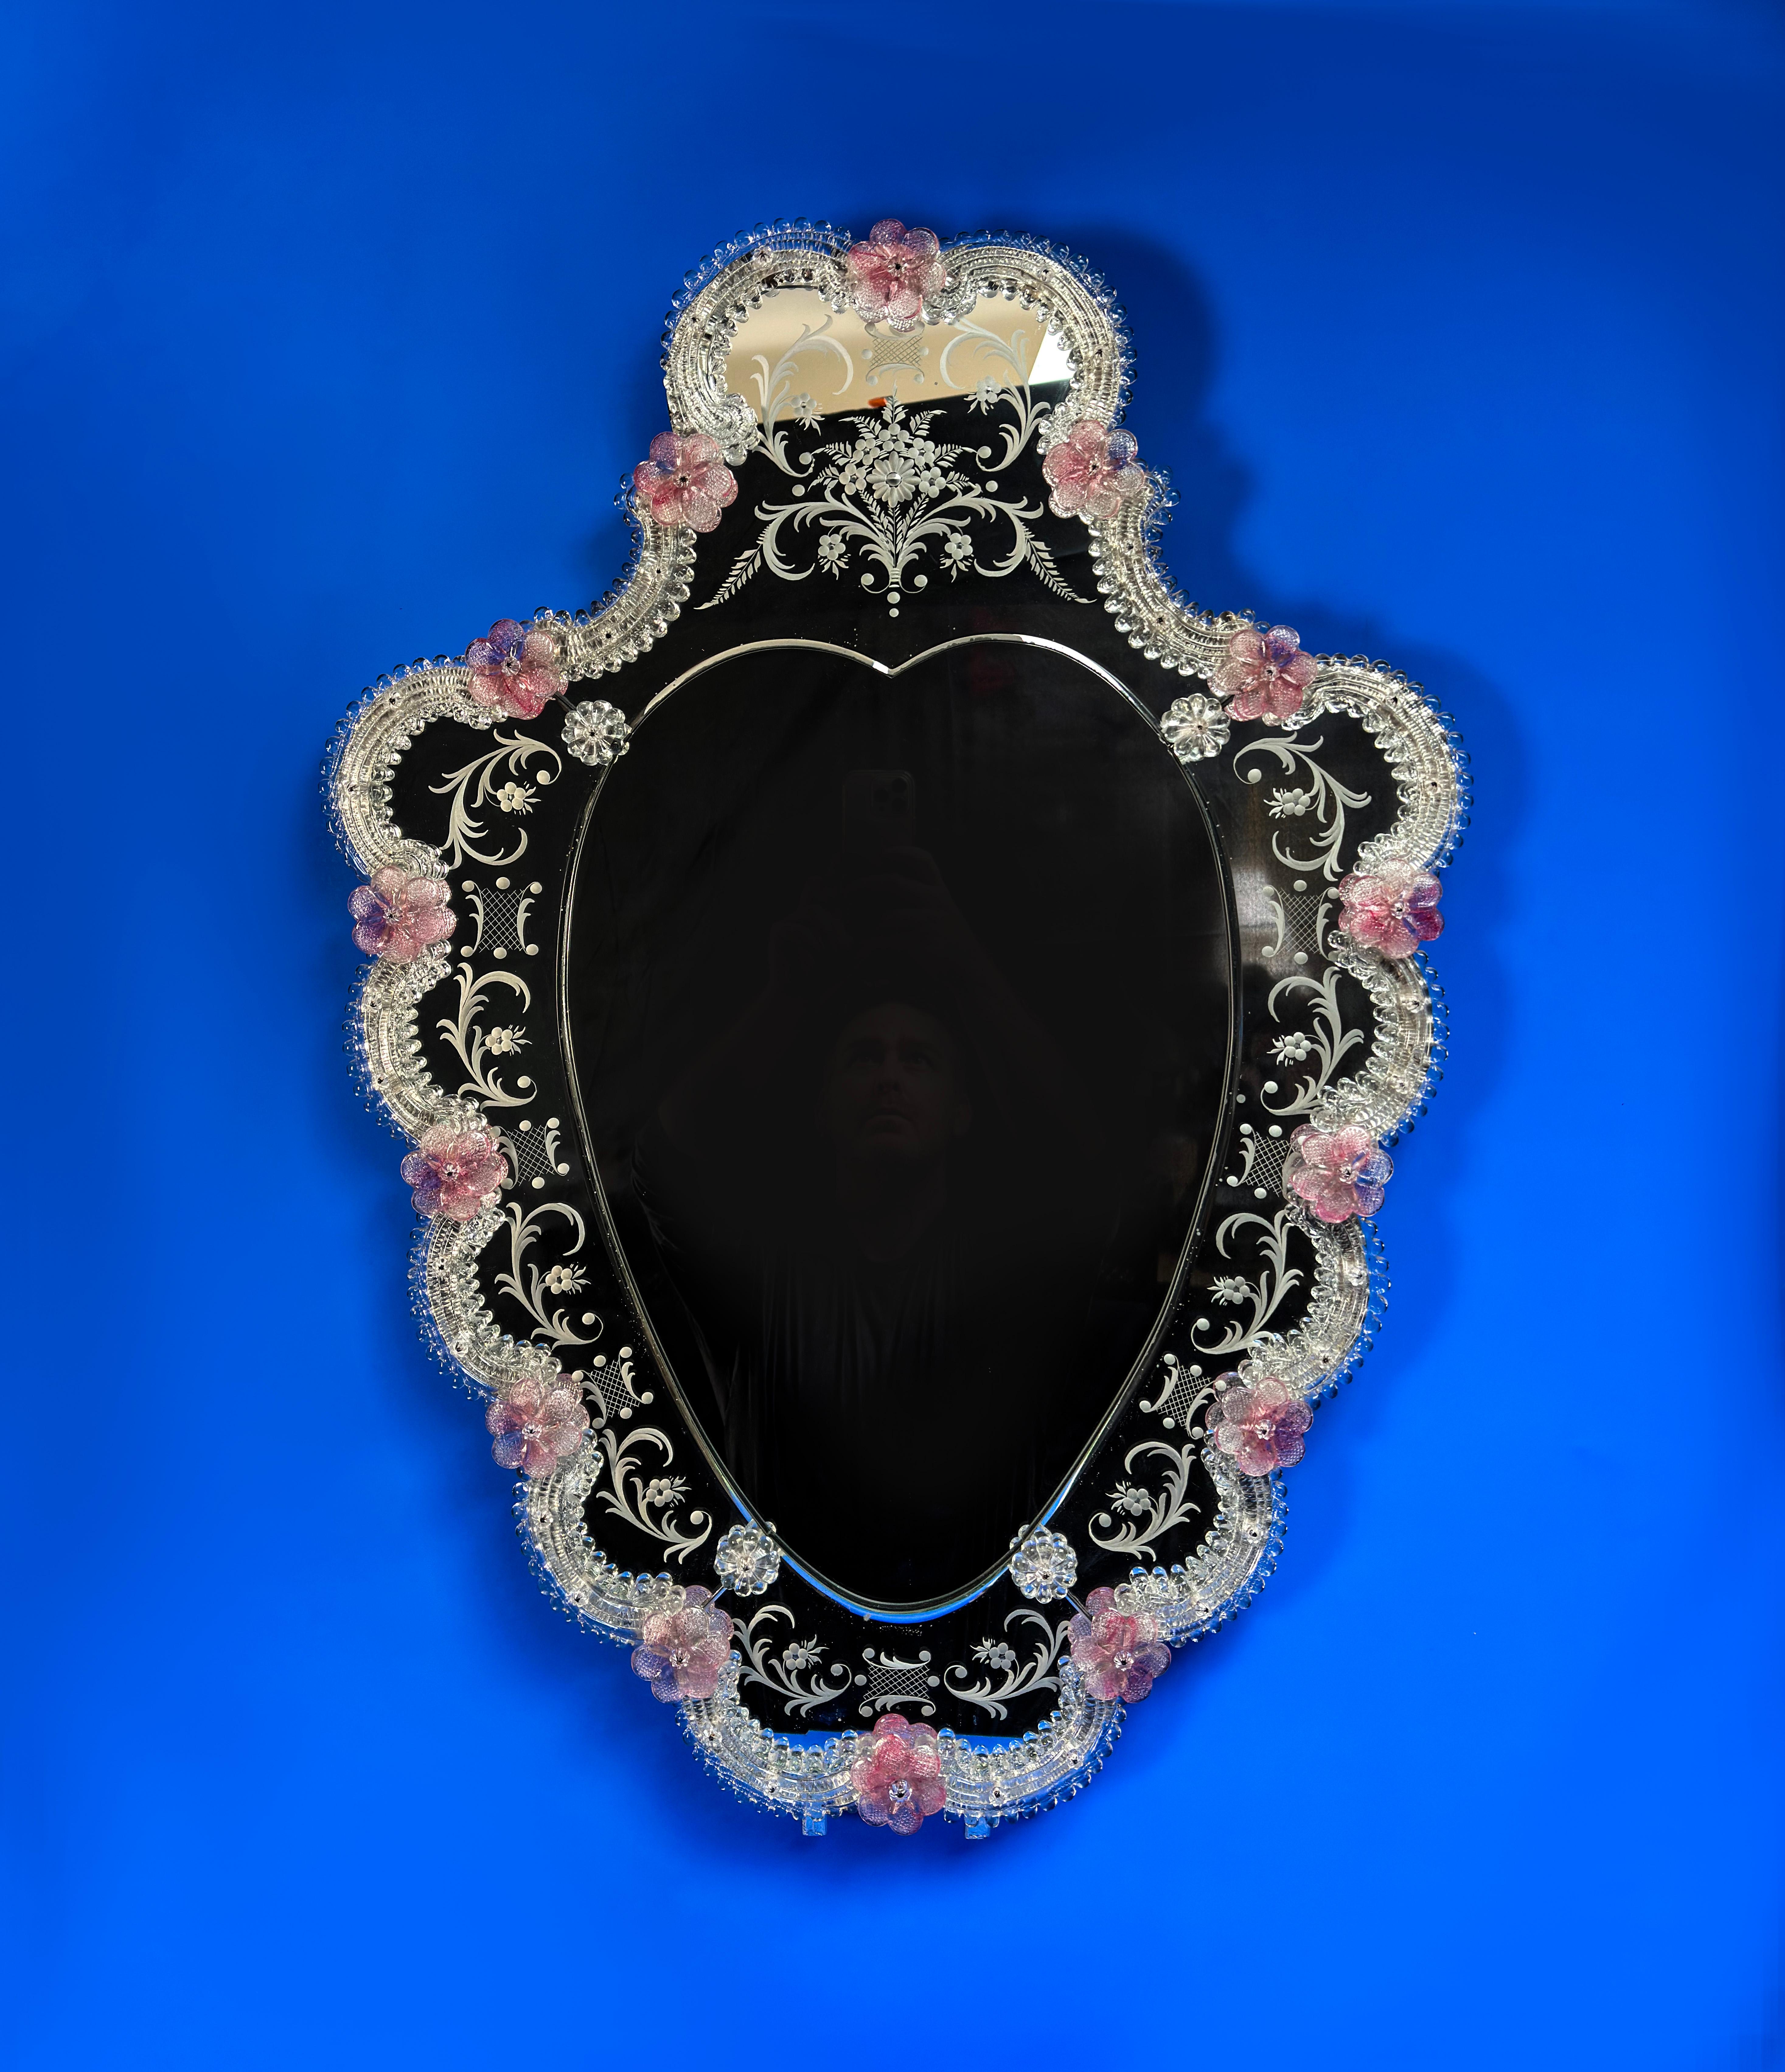 Ein schöner schildförmiger venezianischer Spiegel, der in den 1960er Jahren in Venedig hergestellt wurde

Es zeigt eine Reihe von zarten Verzierungen und Verschönerungen. Das äußere Spiegelpaneel ist fein geätzt und mit einer Reihe von Rokoko-Rollen